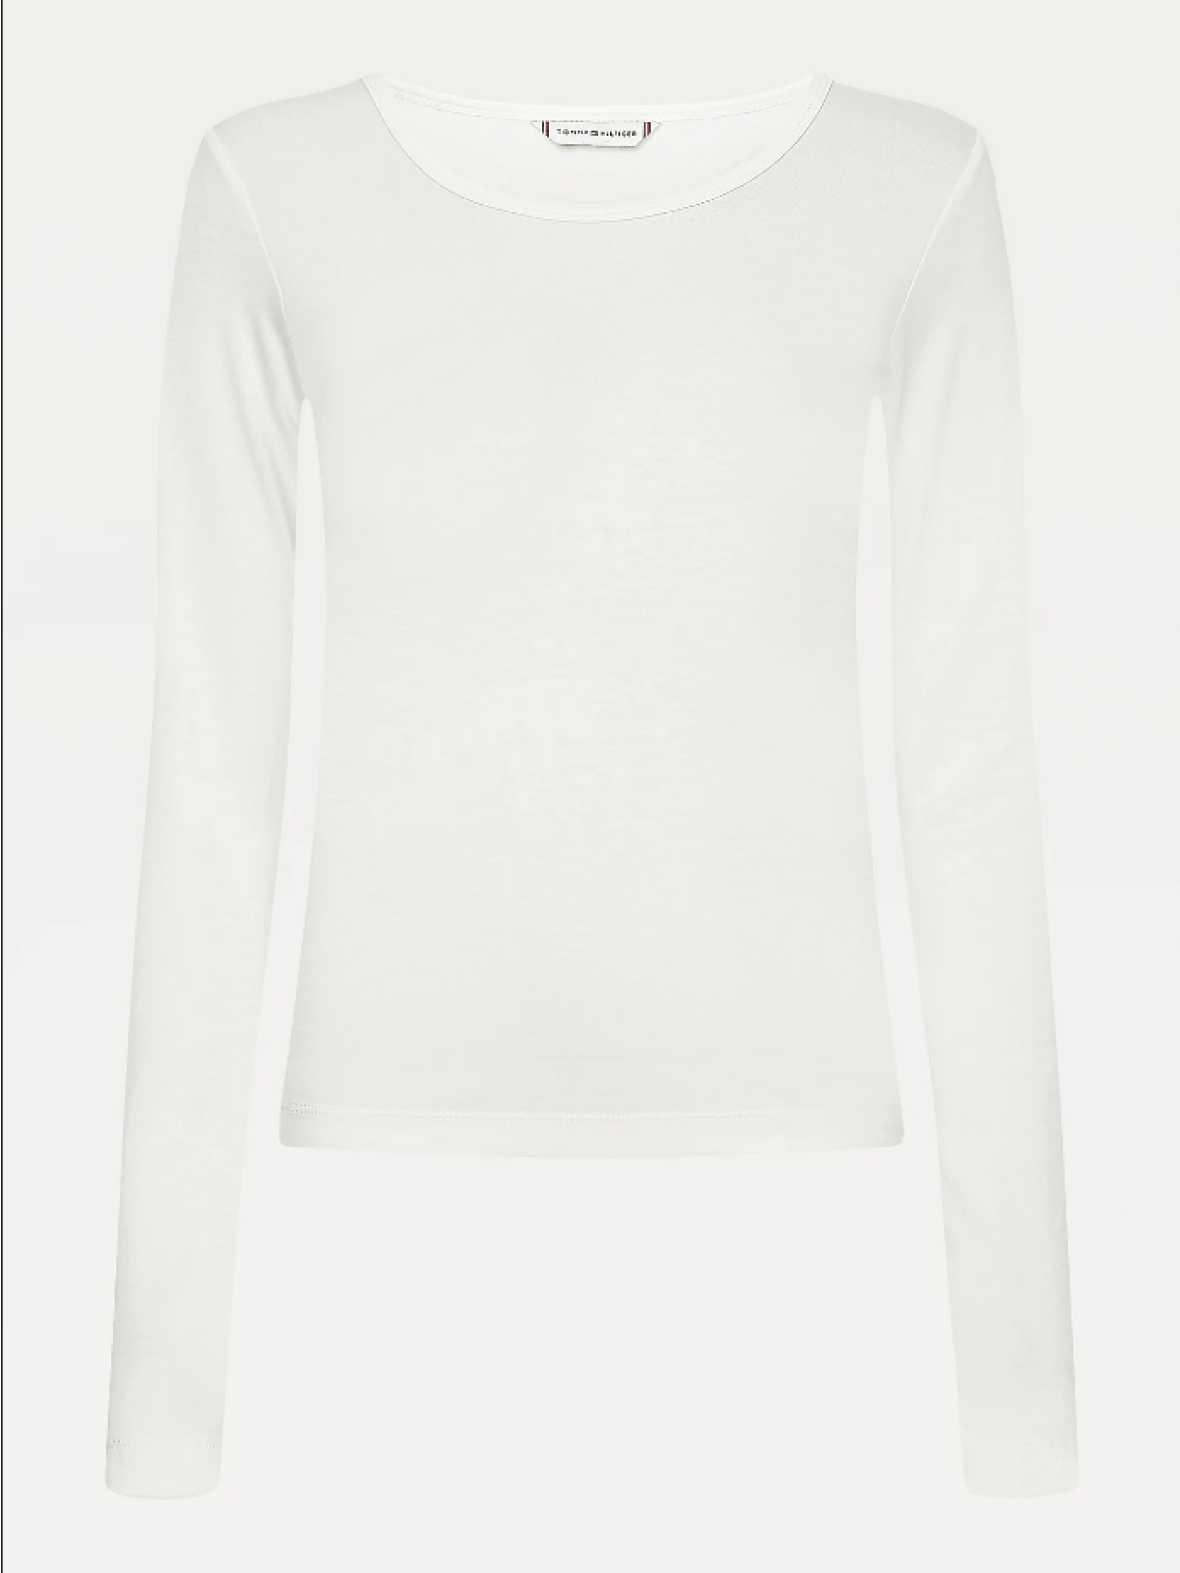 modvirke Guggenheim Museum tage ned CC Christensen - Skinny Viscose Scoop - Langærmet t-shirt fra Tommy Hilfiger